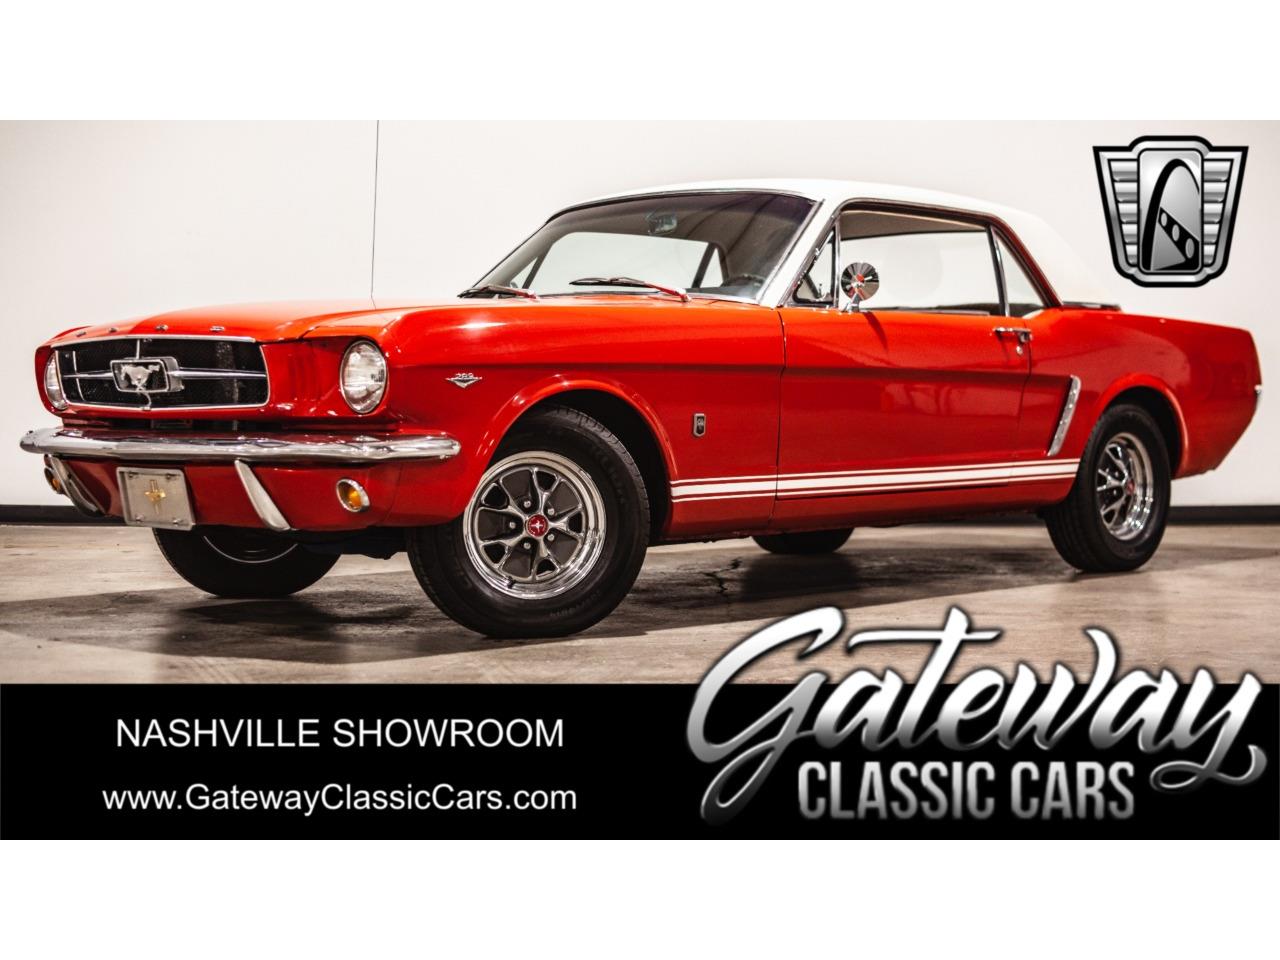 For Sale: 1965 Ford Mustang in O'Fallon, Illinois for sale in O Fallon, IL